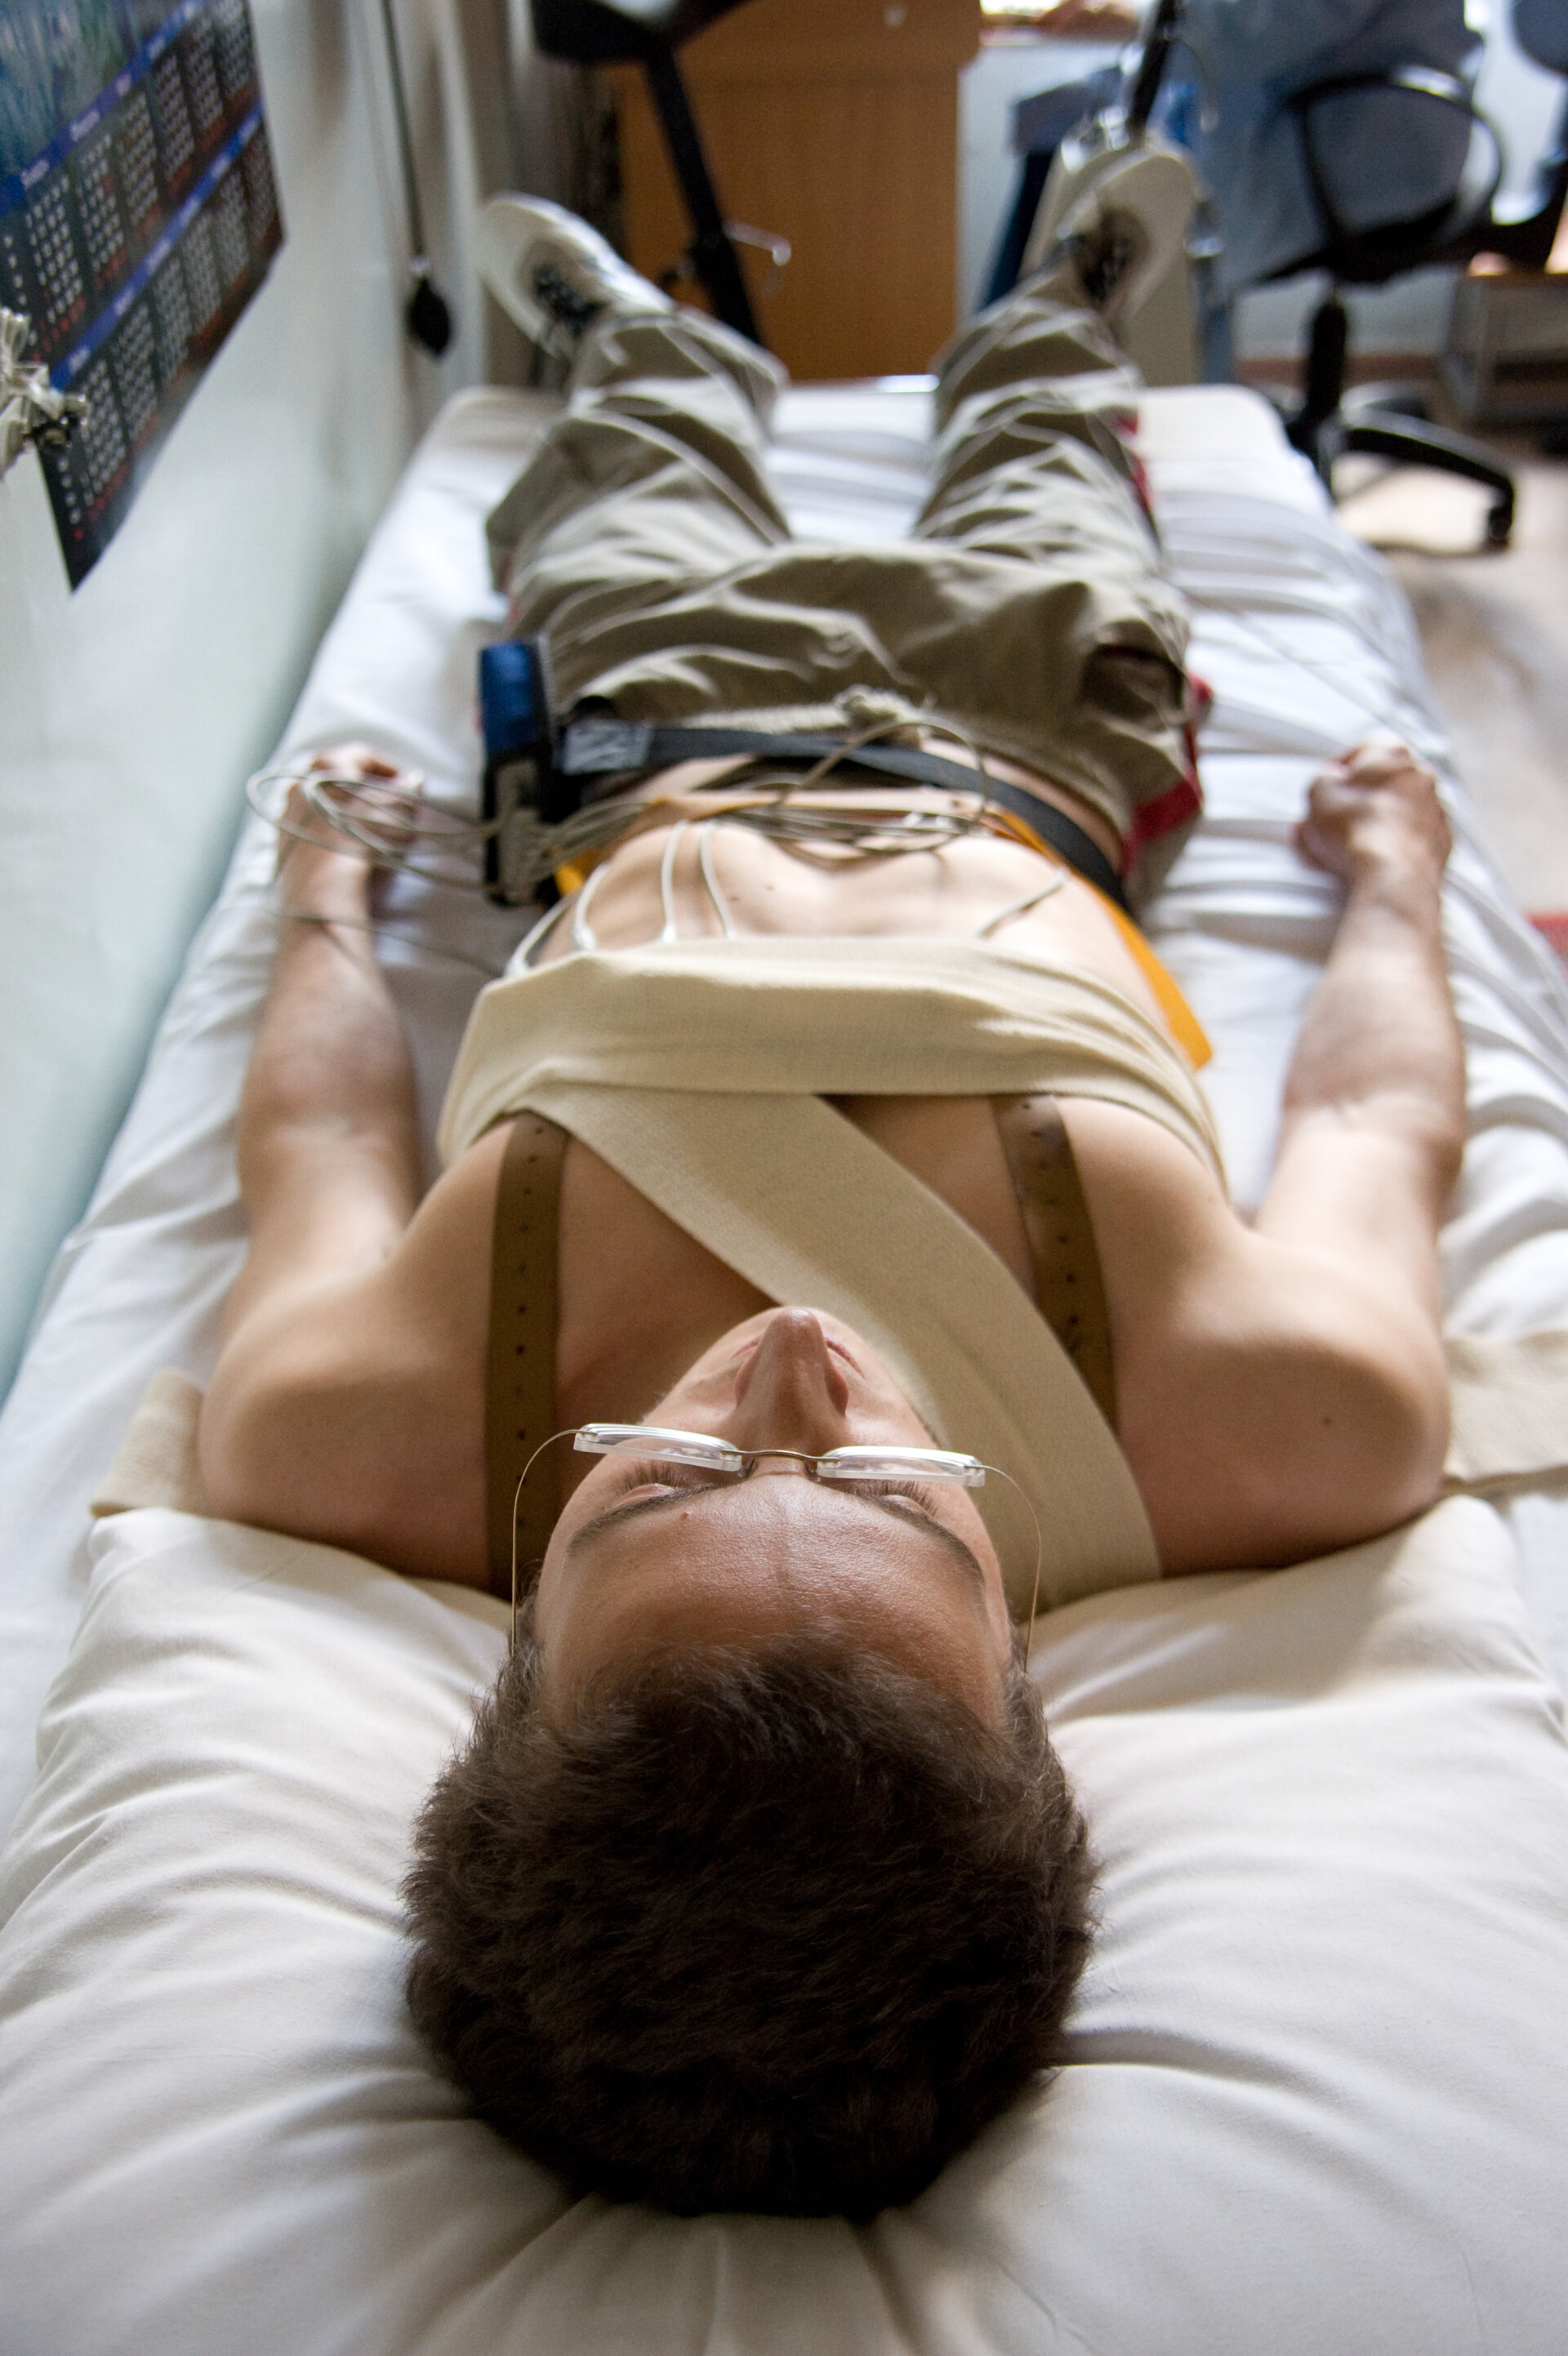 Pruebas médicas intensivas, incluyendo ECG en reposo y haciendo ejercicio